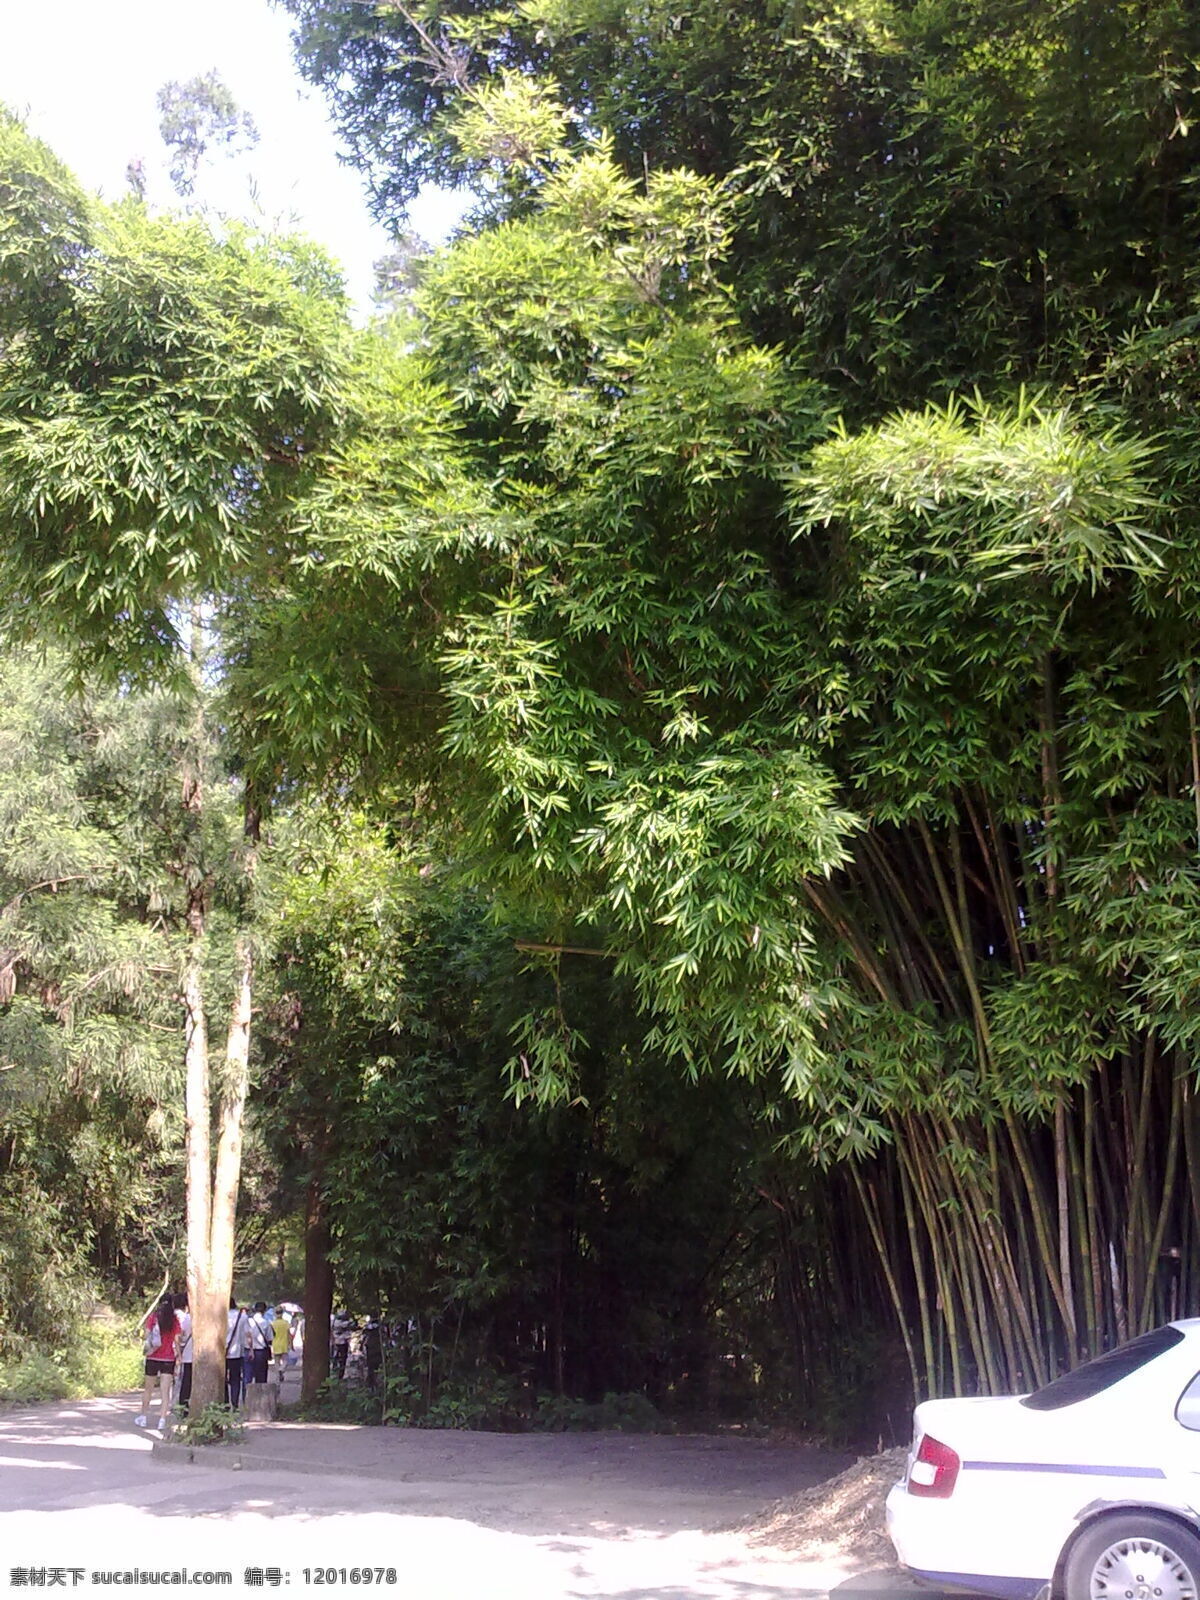 凤尾竹 迷人 福建 武夷山 南方植物 茂盛 春光 竹子 绿化植物 自然风景 自然景观